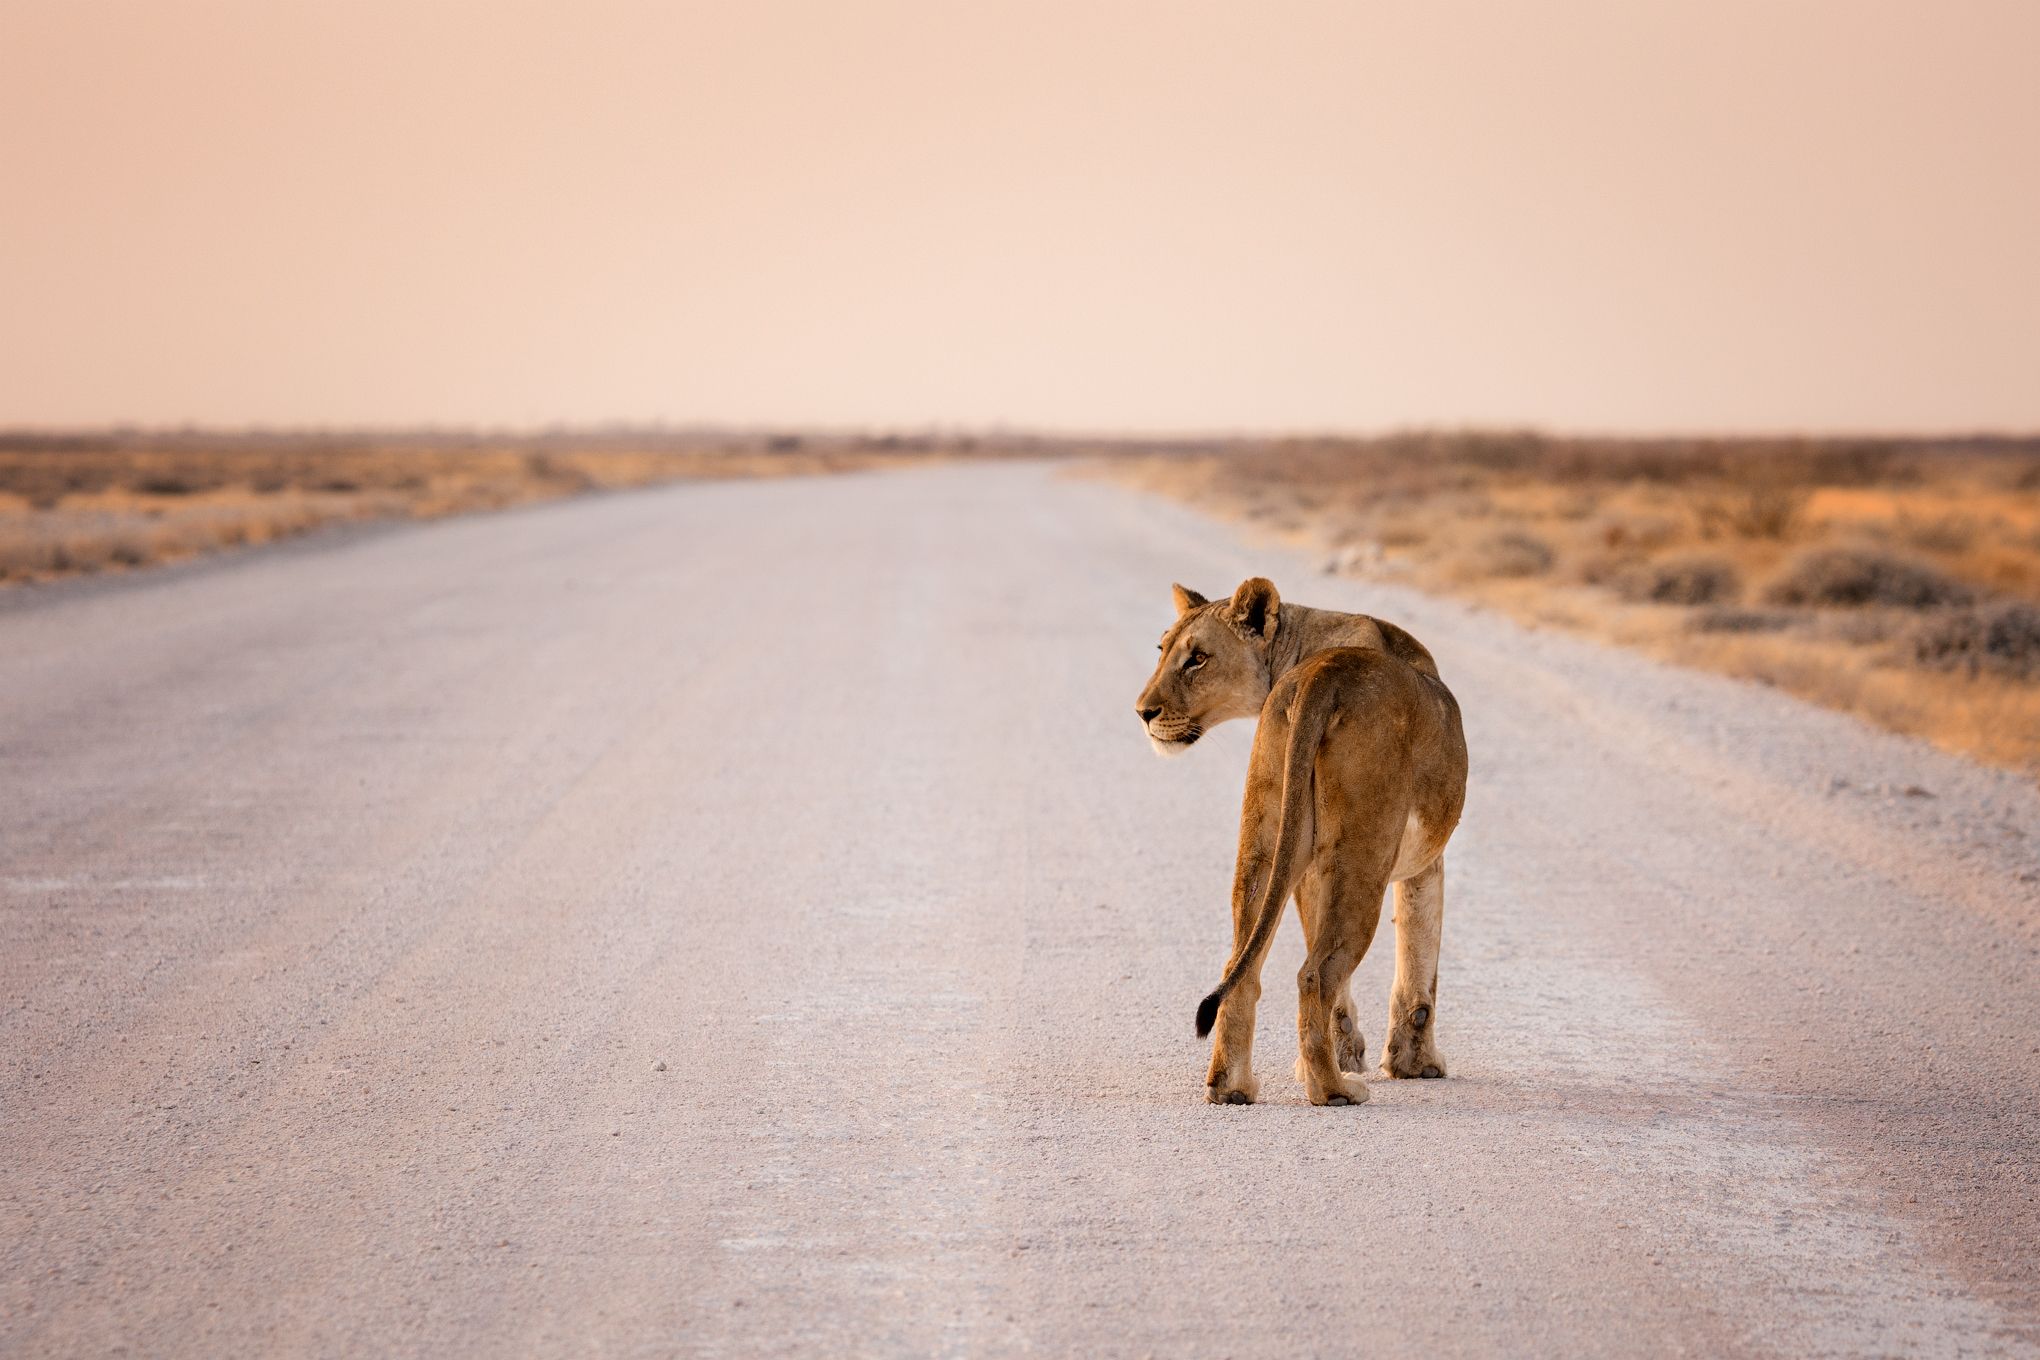 #Намибия #Этоша #львица #дорога #закат #национальный парк #etosha #namibia #africa # lioness #sunset, Наталия Деркач